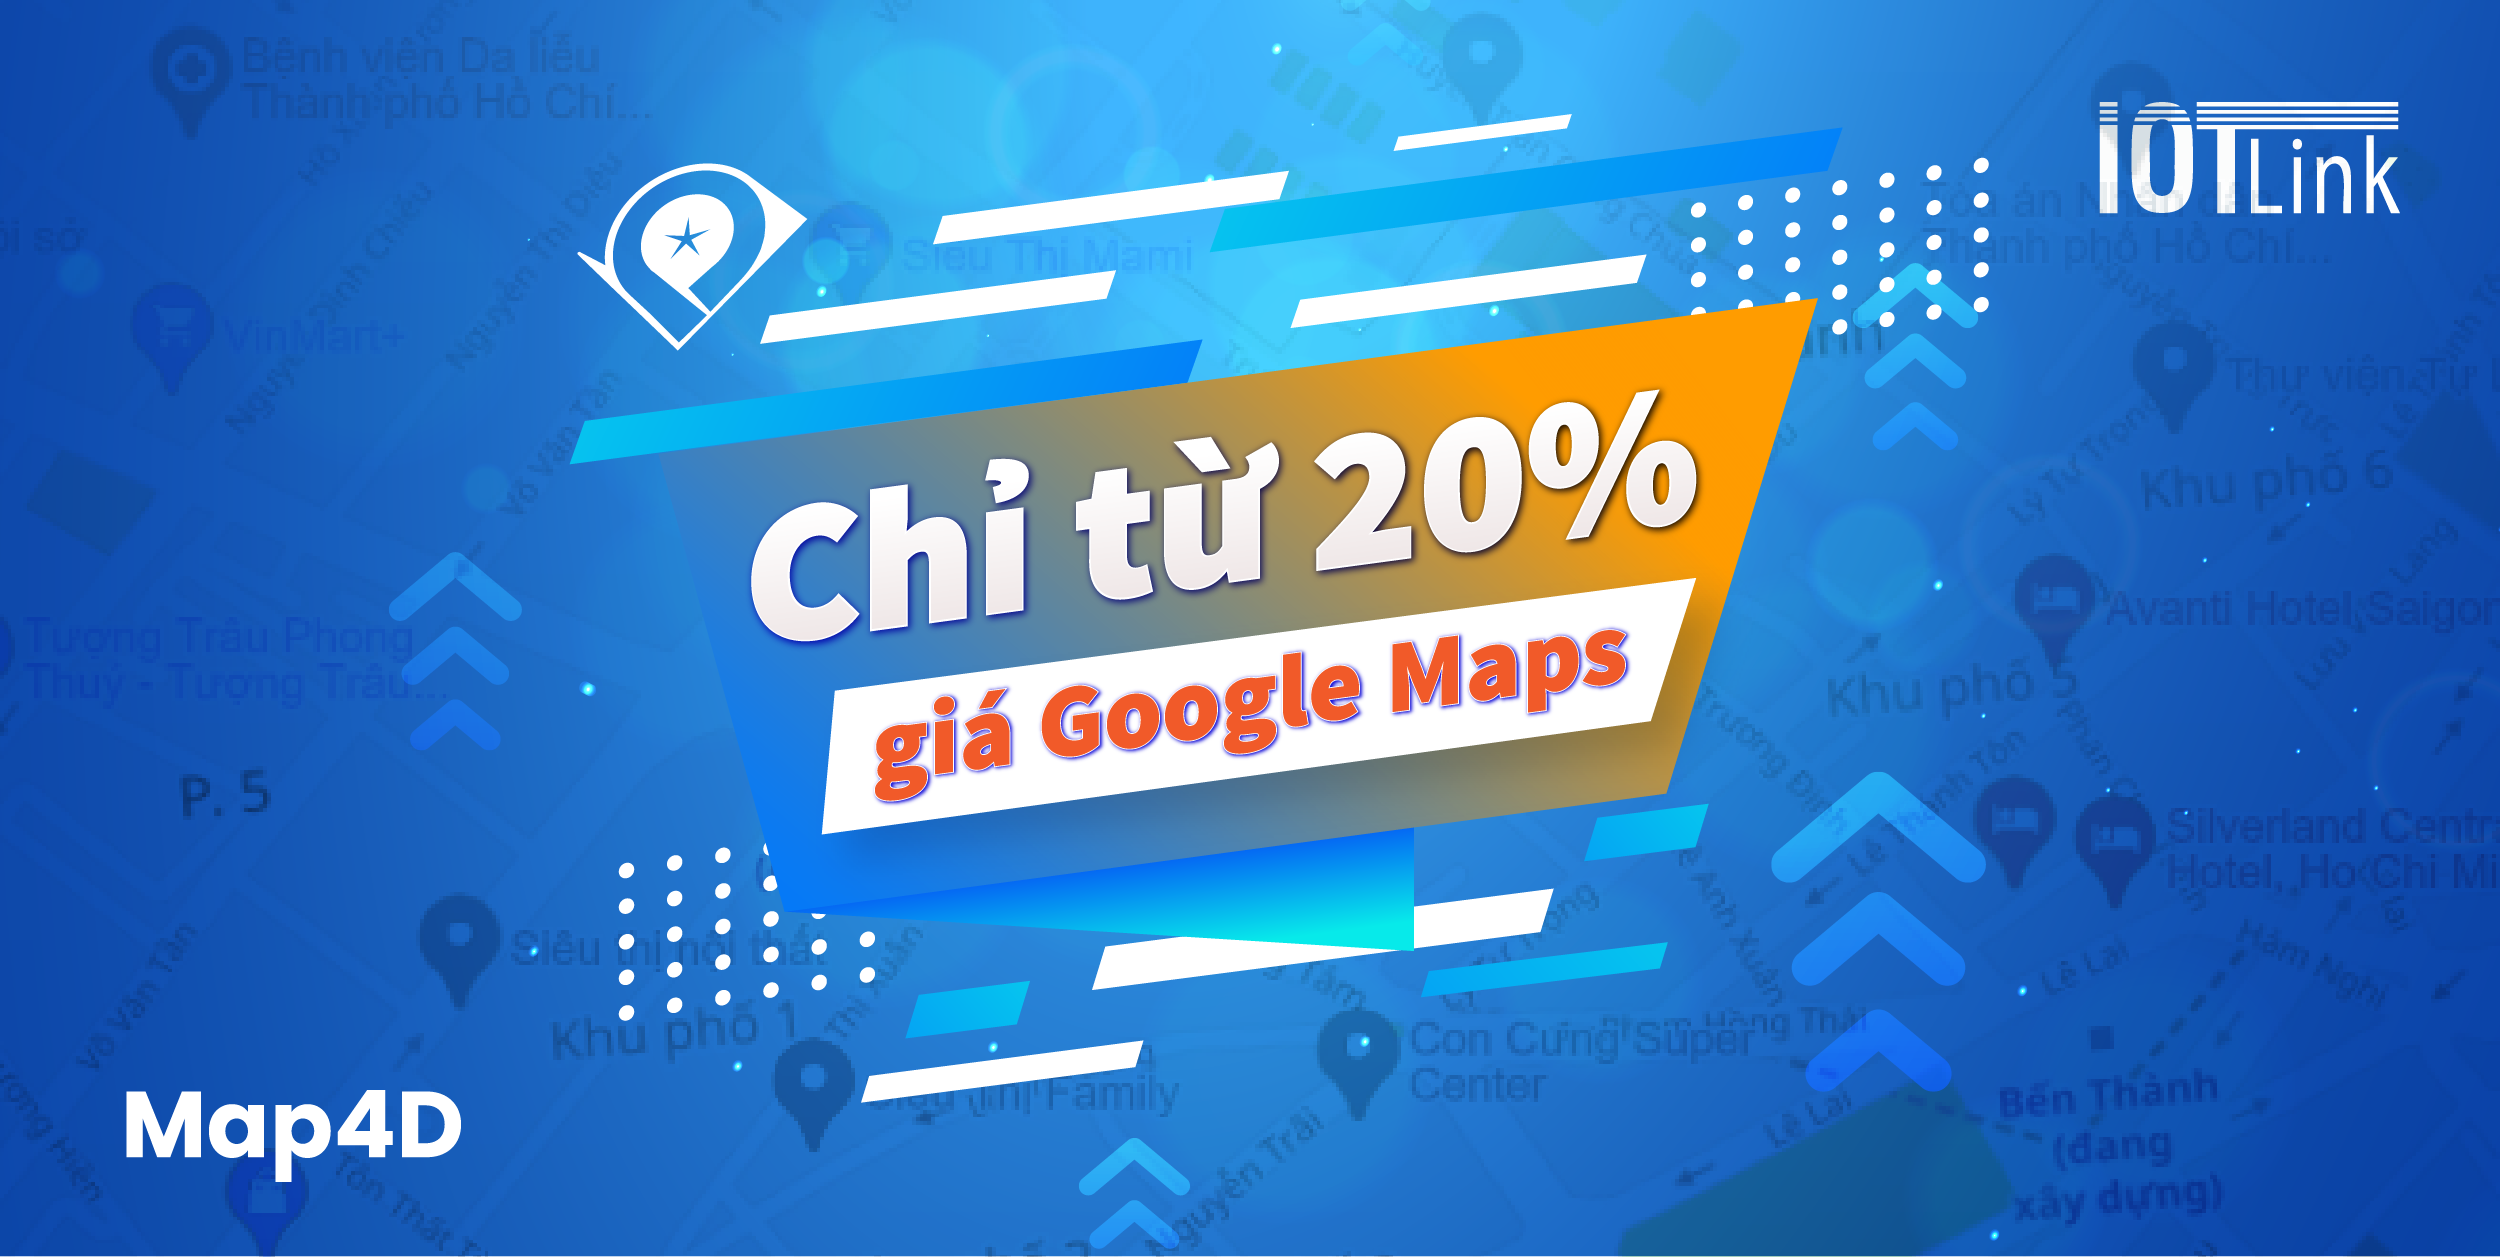 Map4D - Dịch vụ Maps API giá rẻ, chỉ từ 20% Google Maps